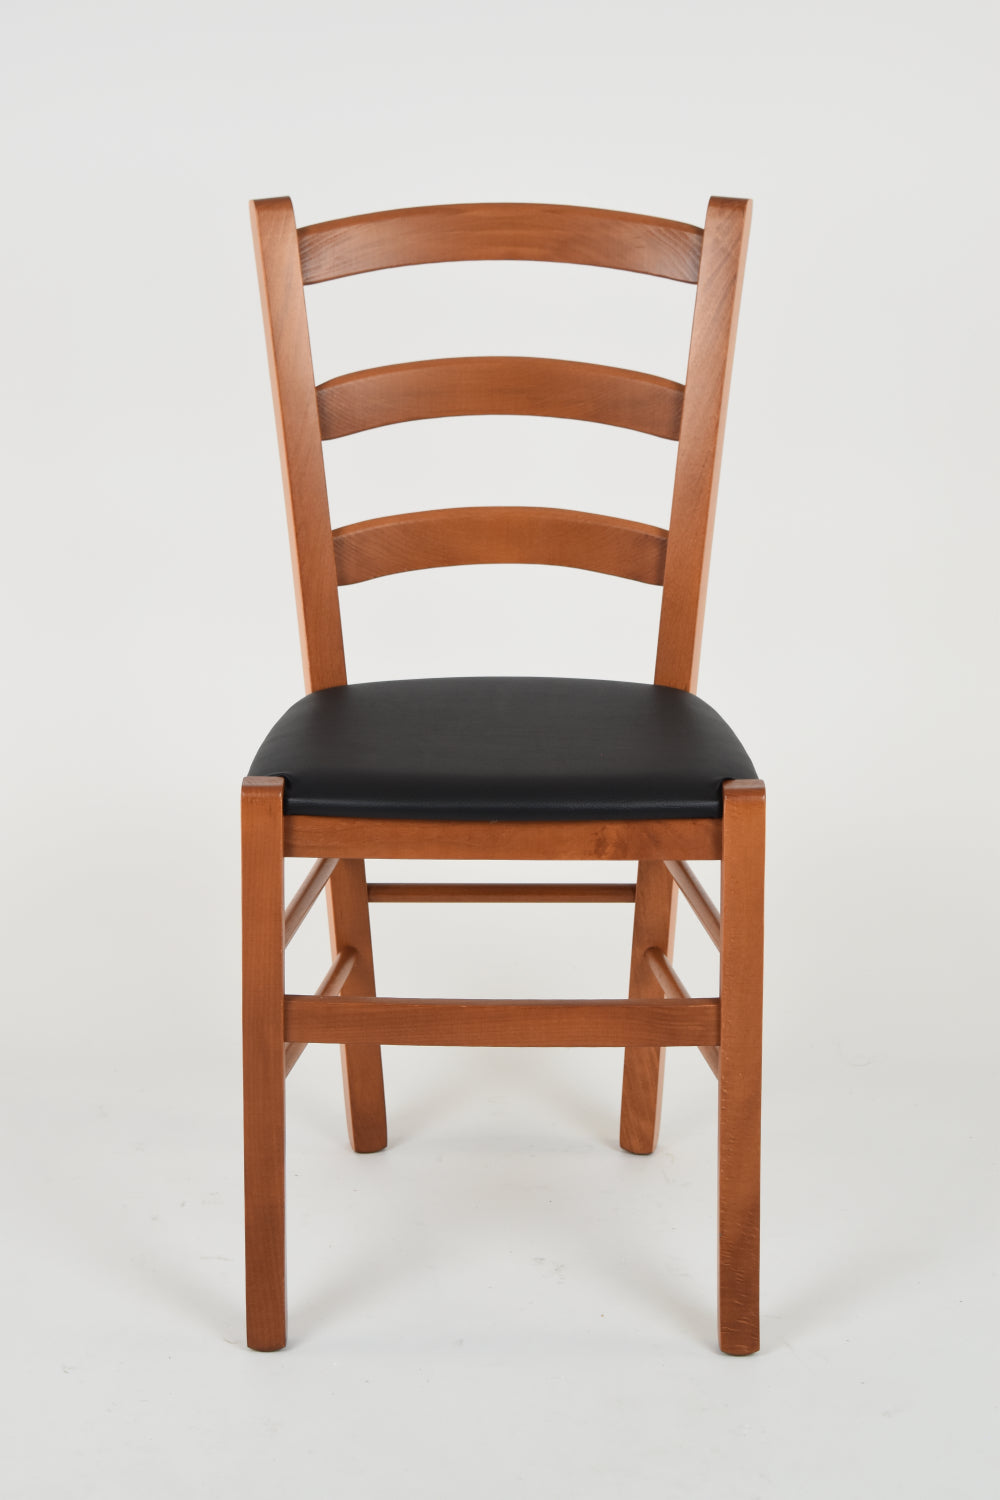 Tommychairs - Set 2 sillas de Cocina y Comedor Venice, Estructura en Madera de Haya Color Cerezo y Asiento tapizado en Polipiel Color Negro